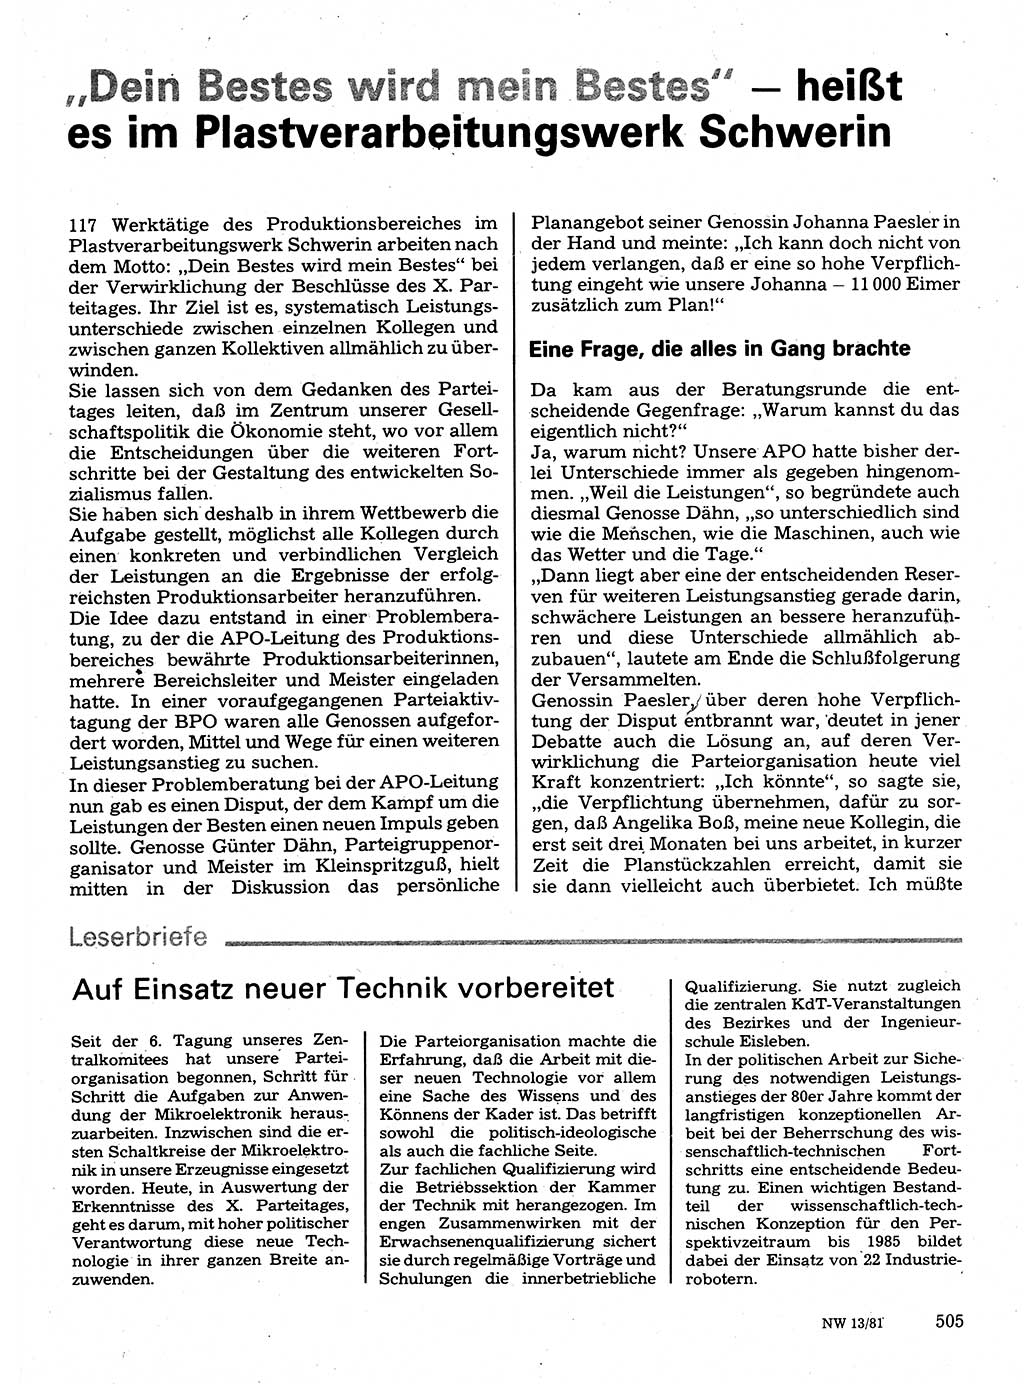 Neuer Weg (NW), Organ des Zentralkomitees (ZK) der SED (Sozialistische Einheitspartei Deutschlands) für Fragen des Parteilebens, 36. Jahrgang [Deutsche Demokratische Republik (DDR)] 1981, Seite 505 (NW ZK SED DDR 1981, S. 505)